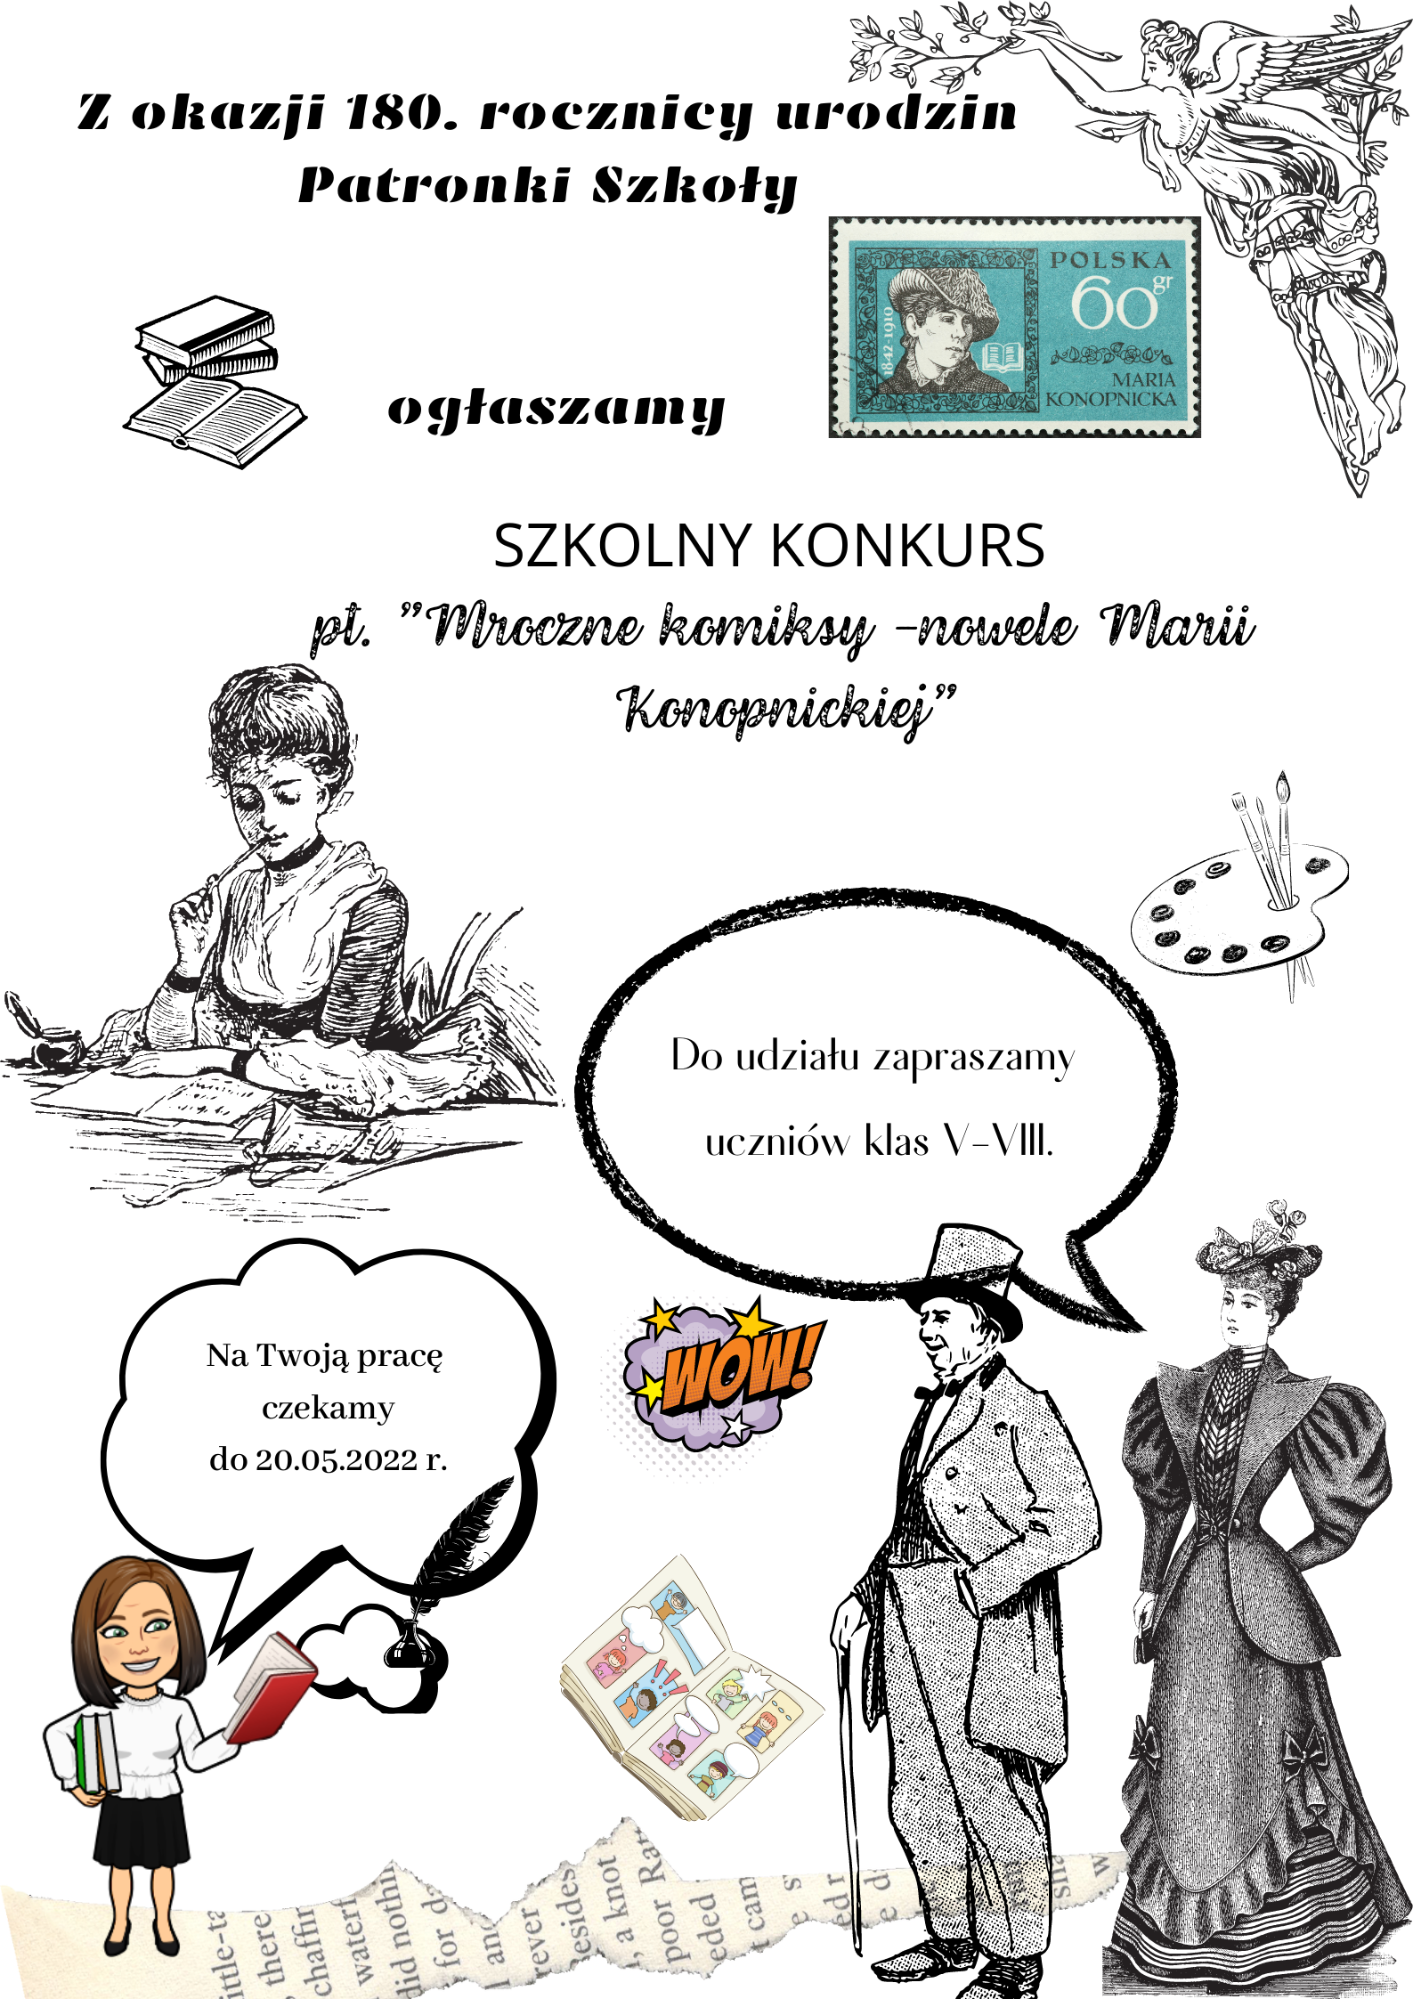 SZKOLNY KONKURS pt. ”Mroczne komiksy -nowele Marii Konopnickiej” dla klas V-VIII - Obrazek 1